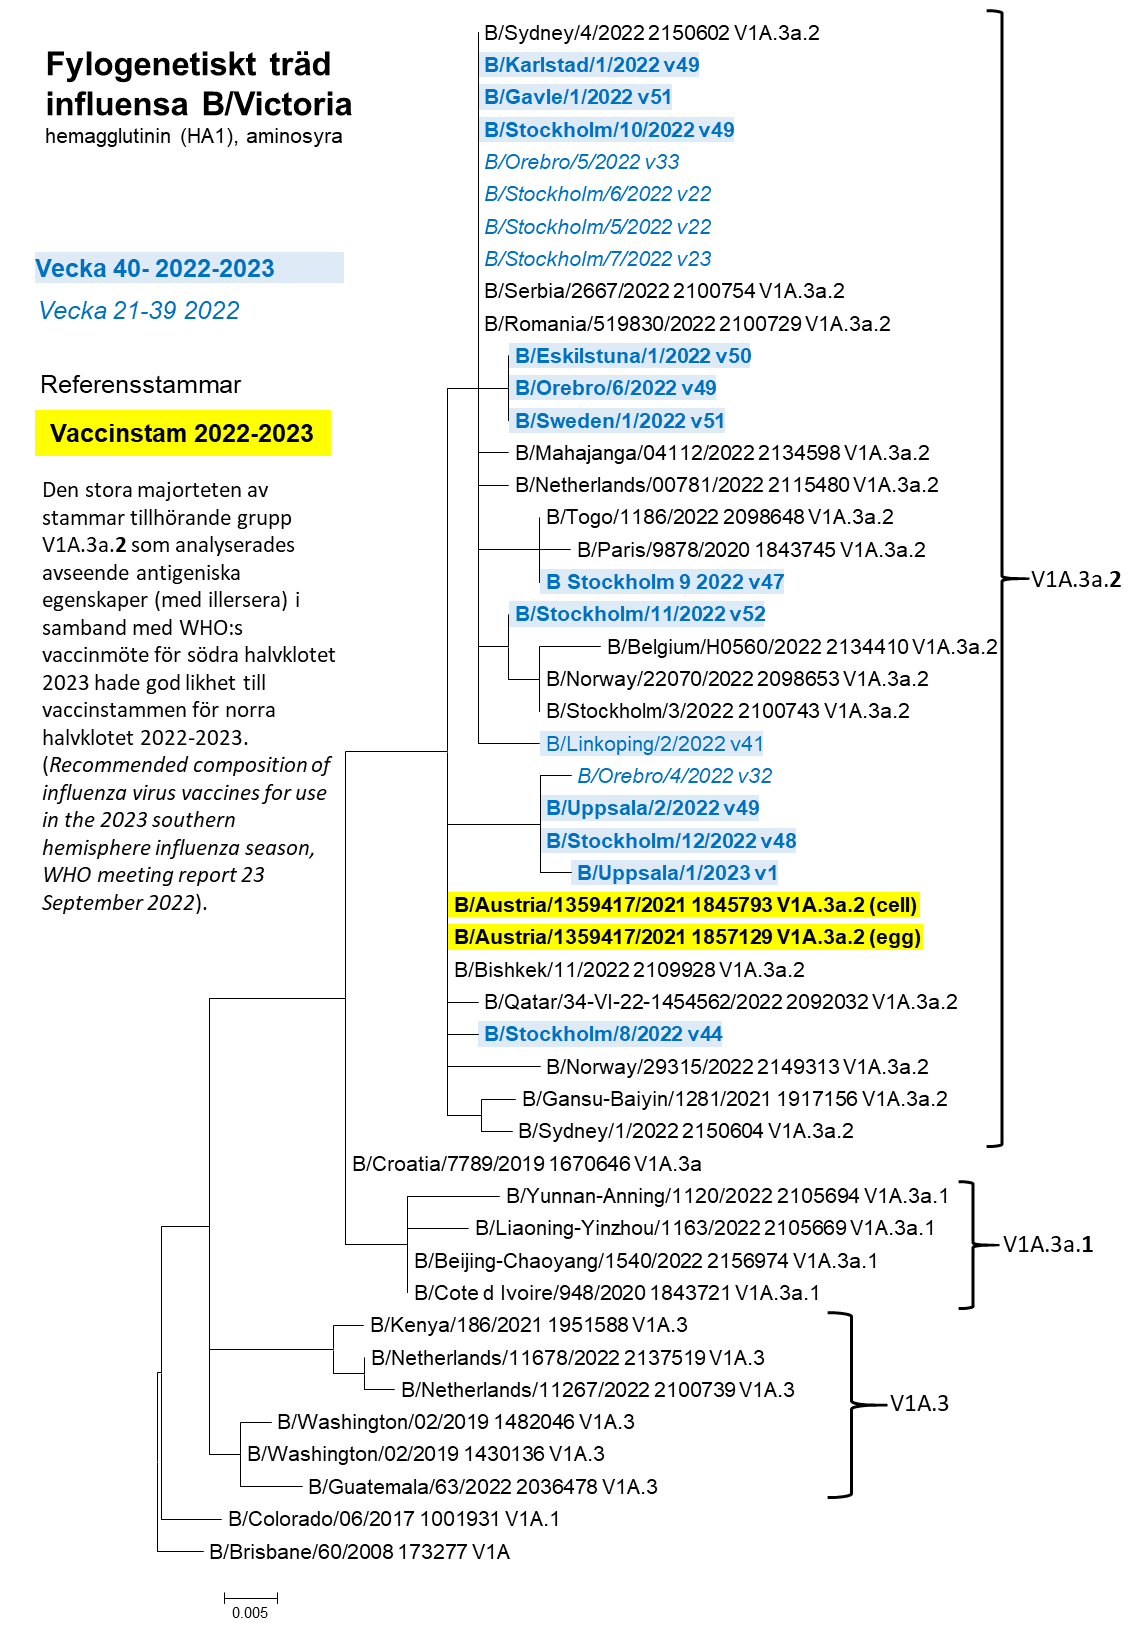 Ett fylogenetiskt träd avseende influensa B Victoria, läs mer under specialavsnitt karaktärisering, underrubrik genetisk grupp. 